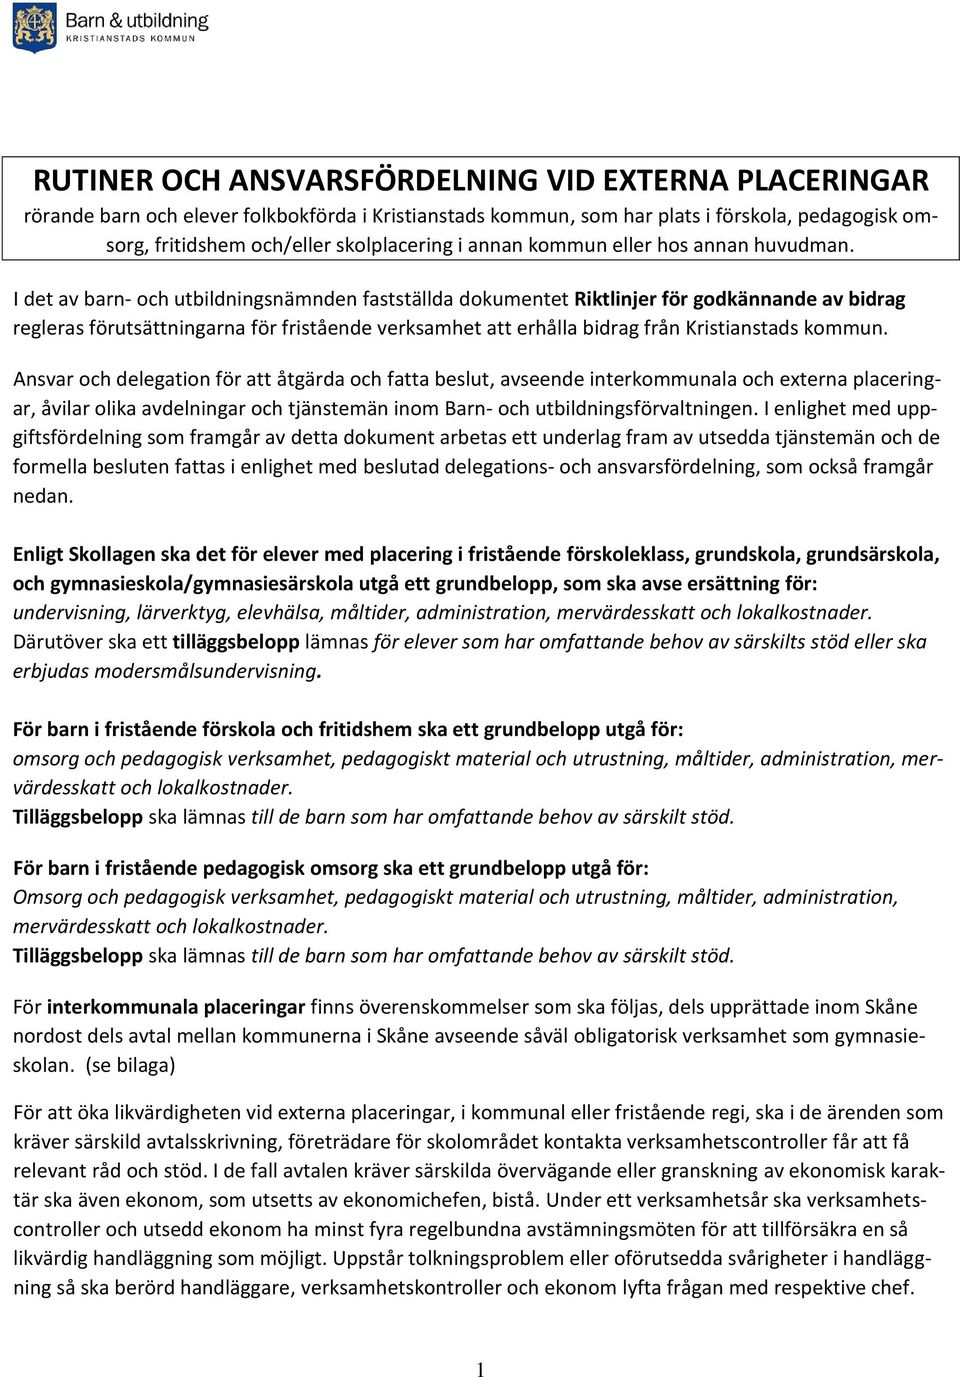 I det av barn- och utbildningsnämnden fastställda dokumentet Riktlinjer för godkännande av bidrag regleras förutsättningarna för fristående verksamhet att erhålla bidrag från Kristianstads kommun.